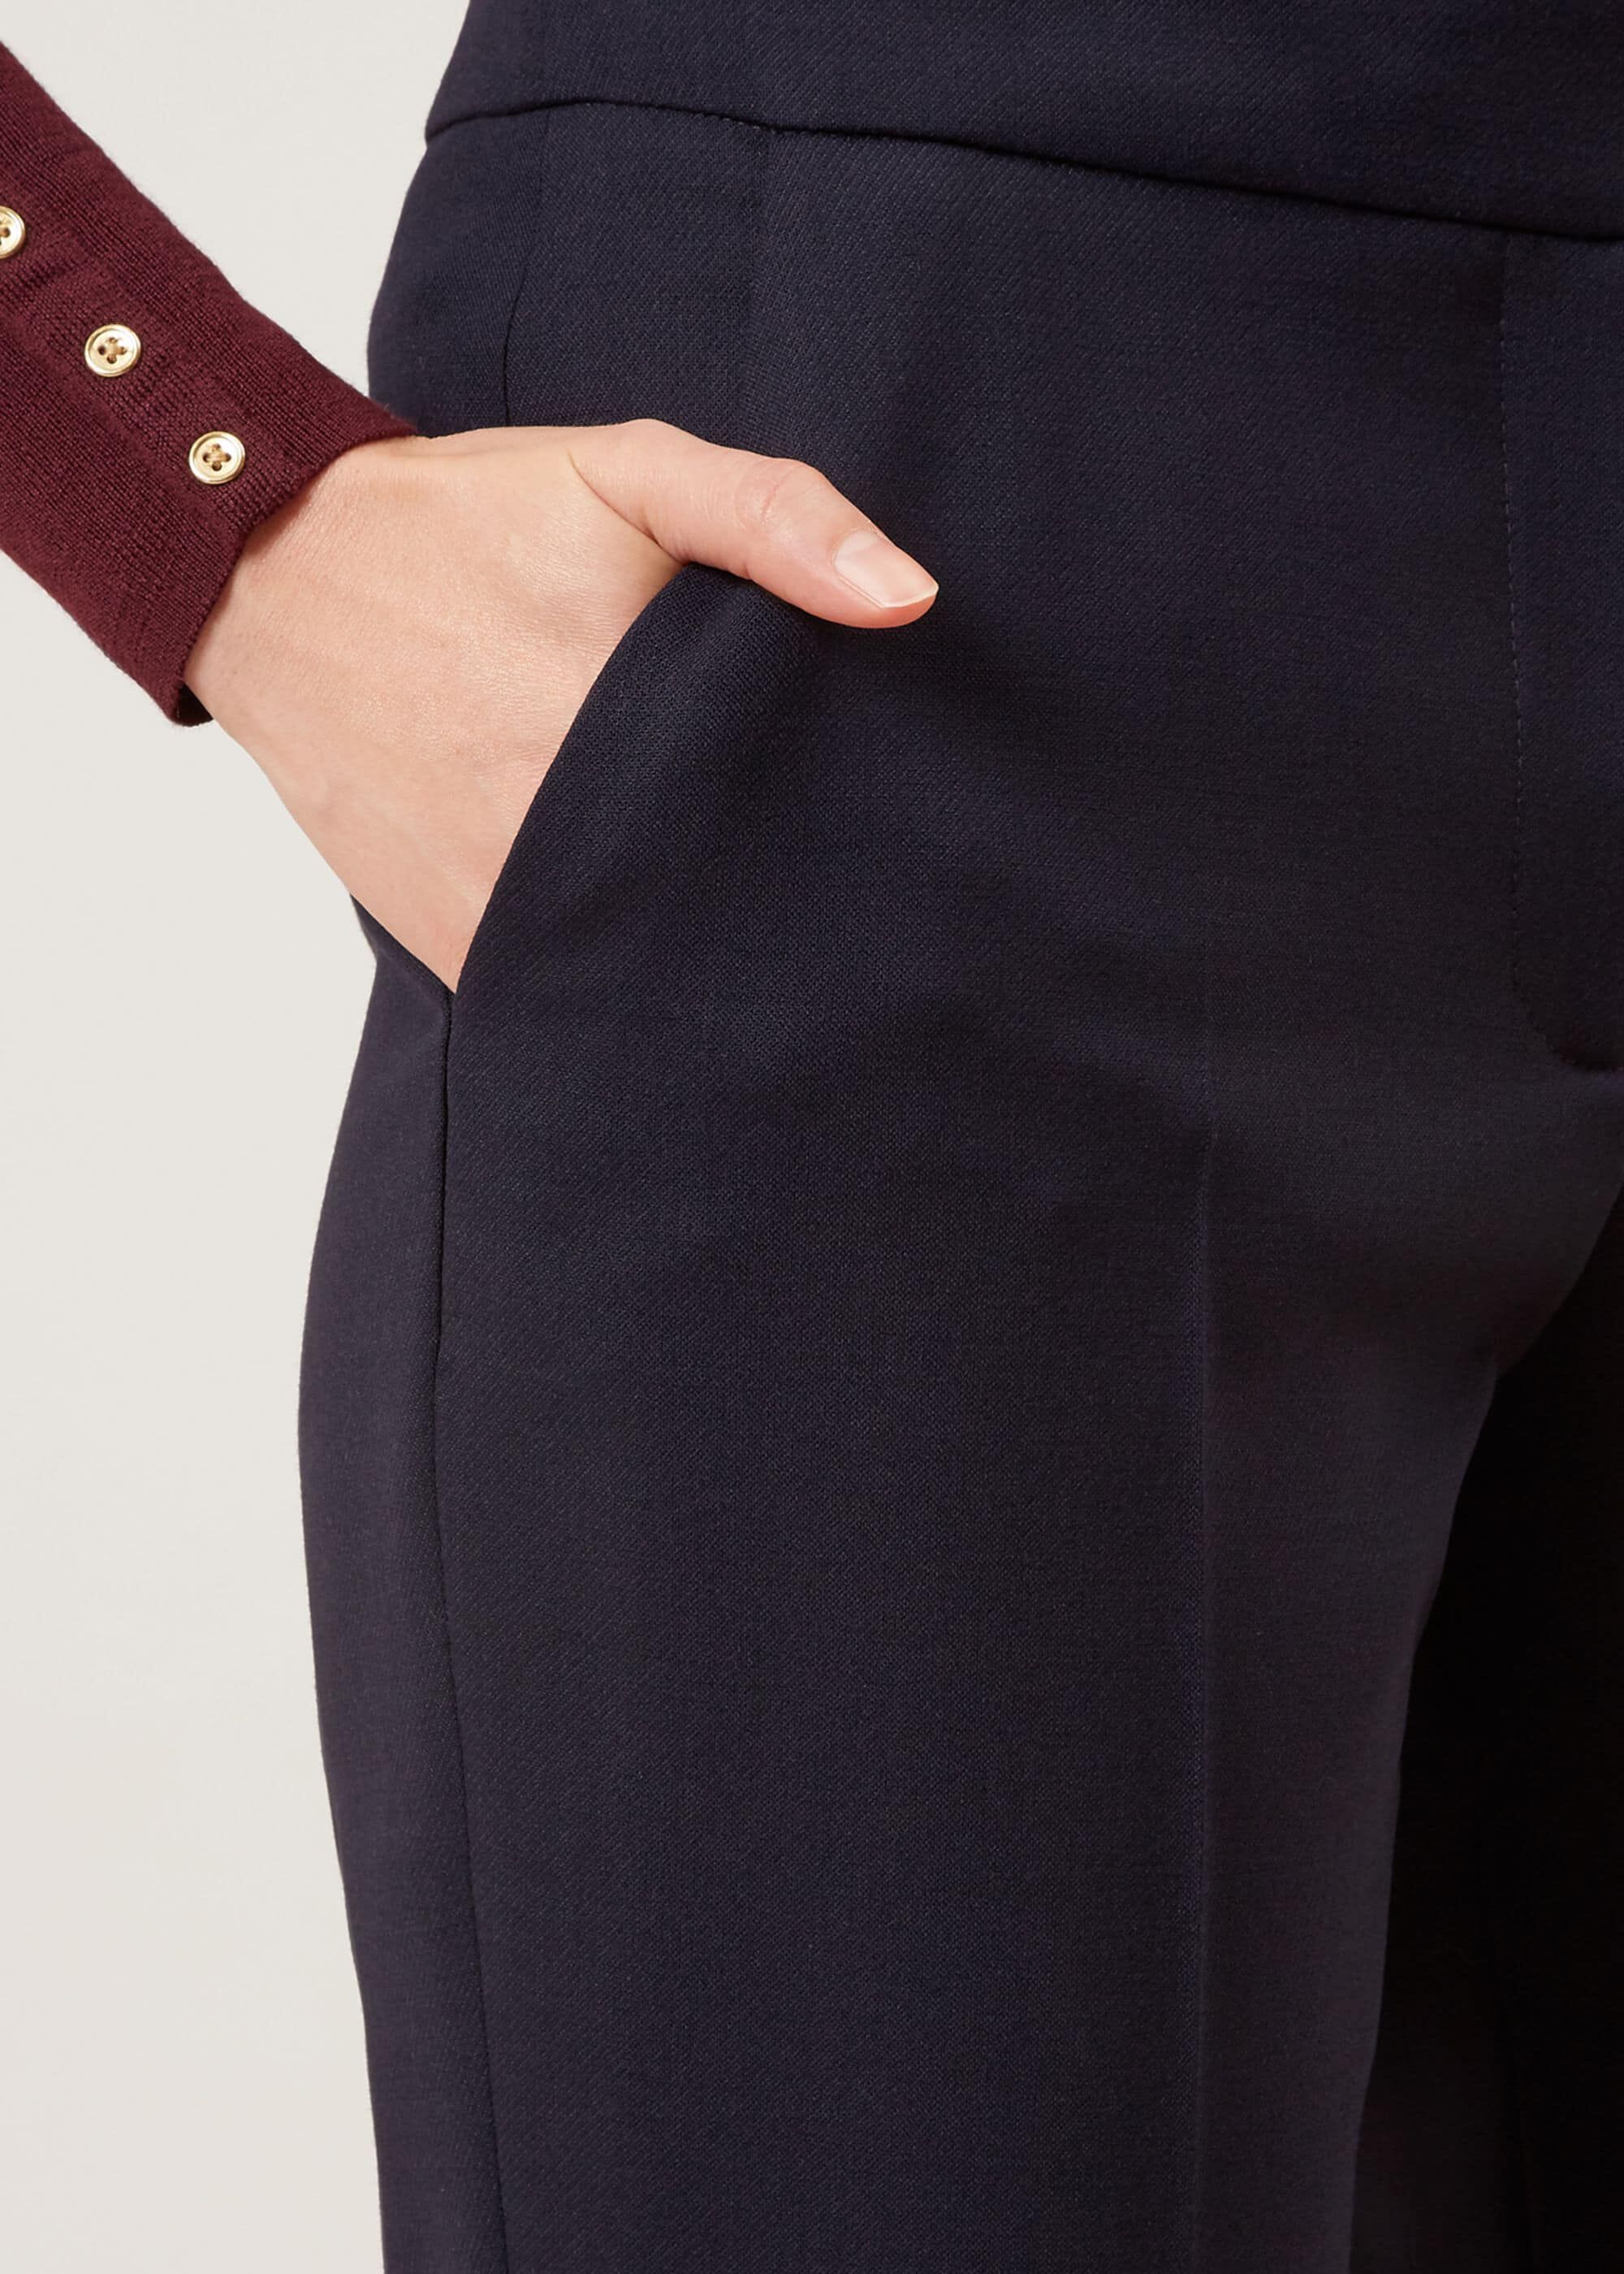 Hobbs Gael Wool Blend Trousers | eBay